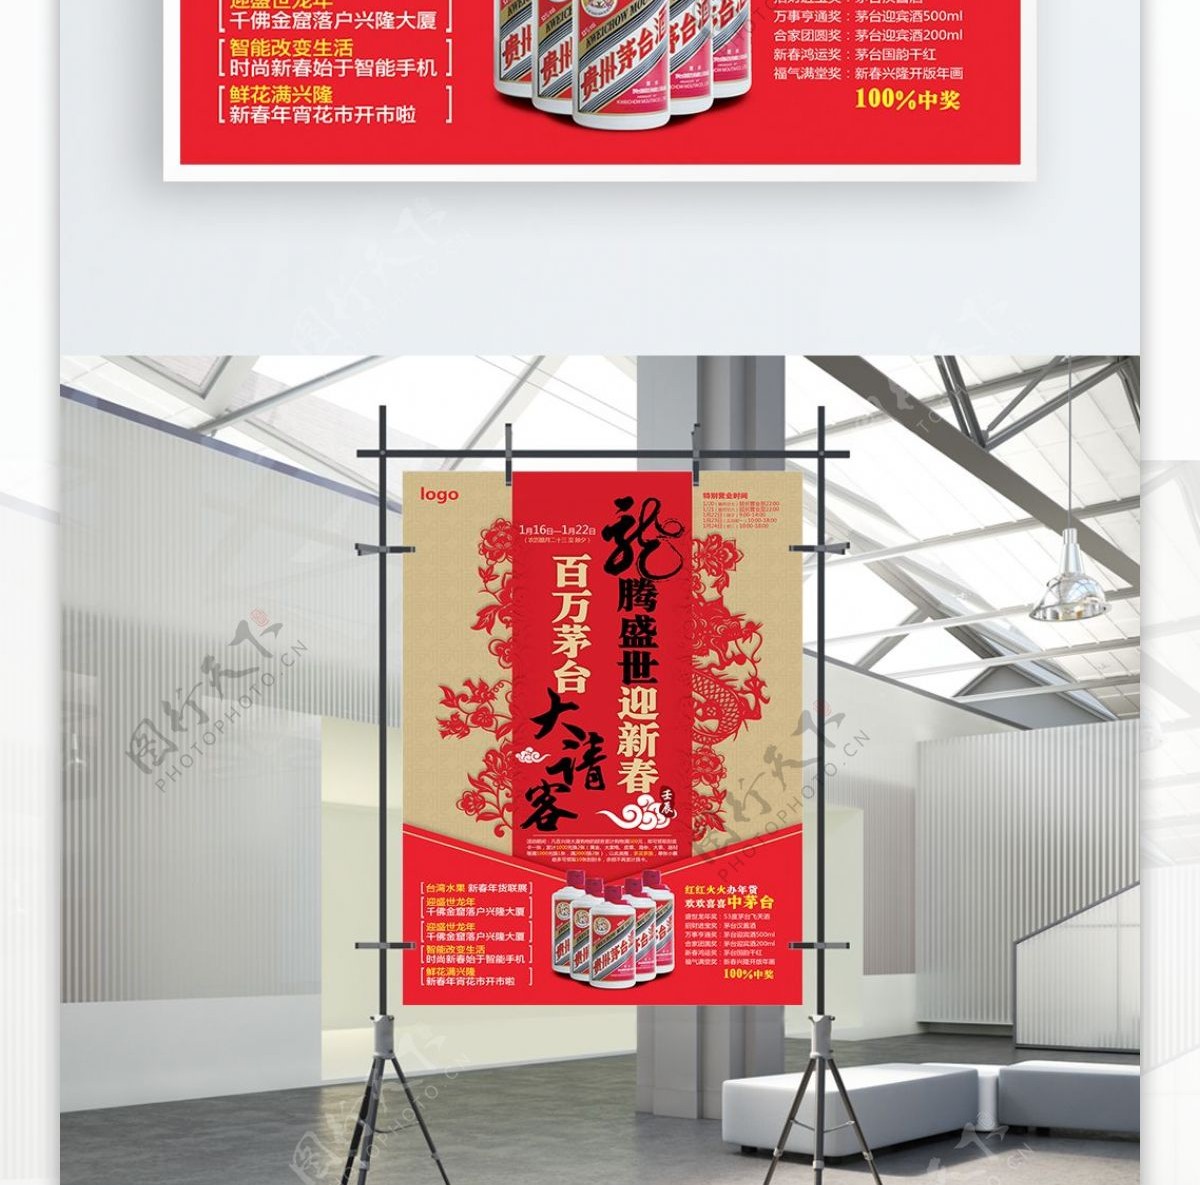 2018年新春节日促销海报